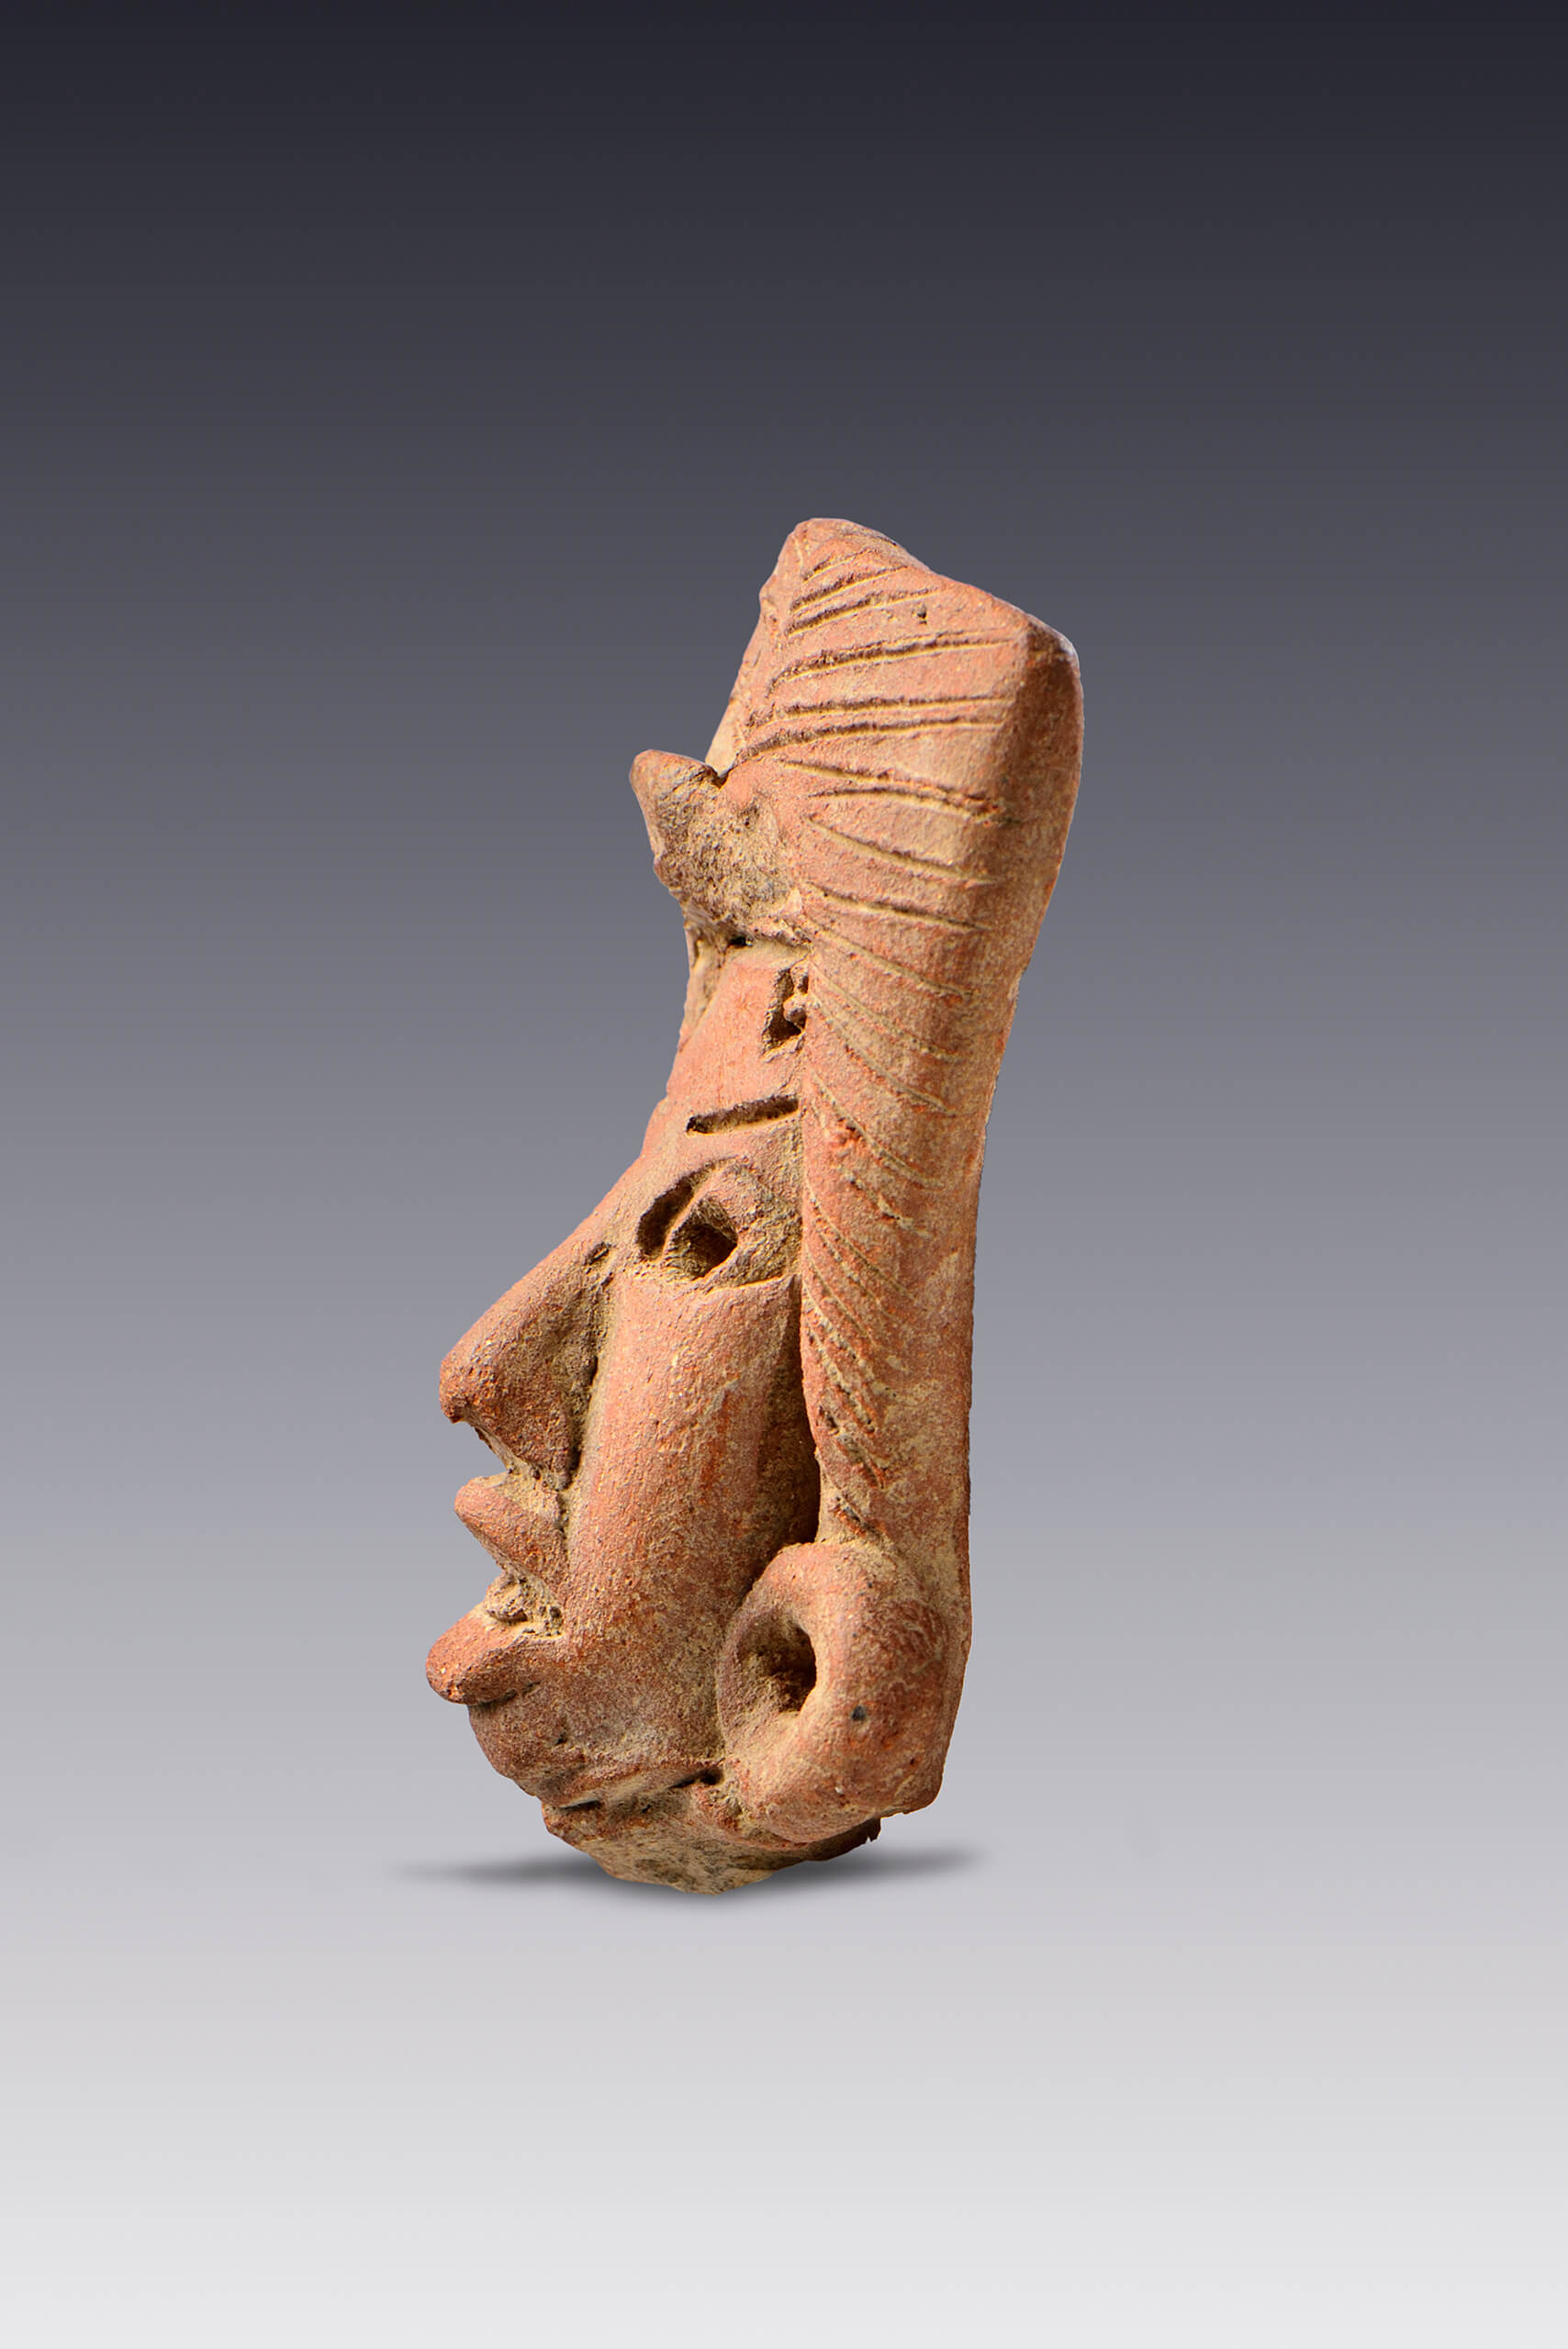 Cabezas humanas ornamentadas | El México antiguo. Salas de Arte Prehispánico | Museo Amparo, Puebla